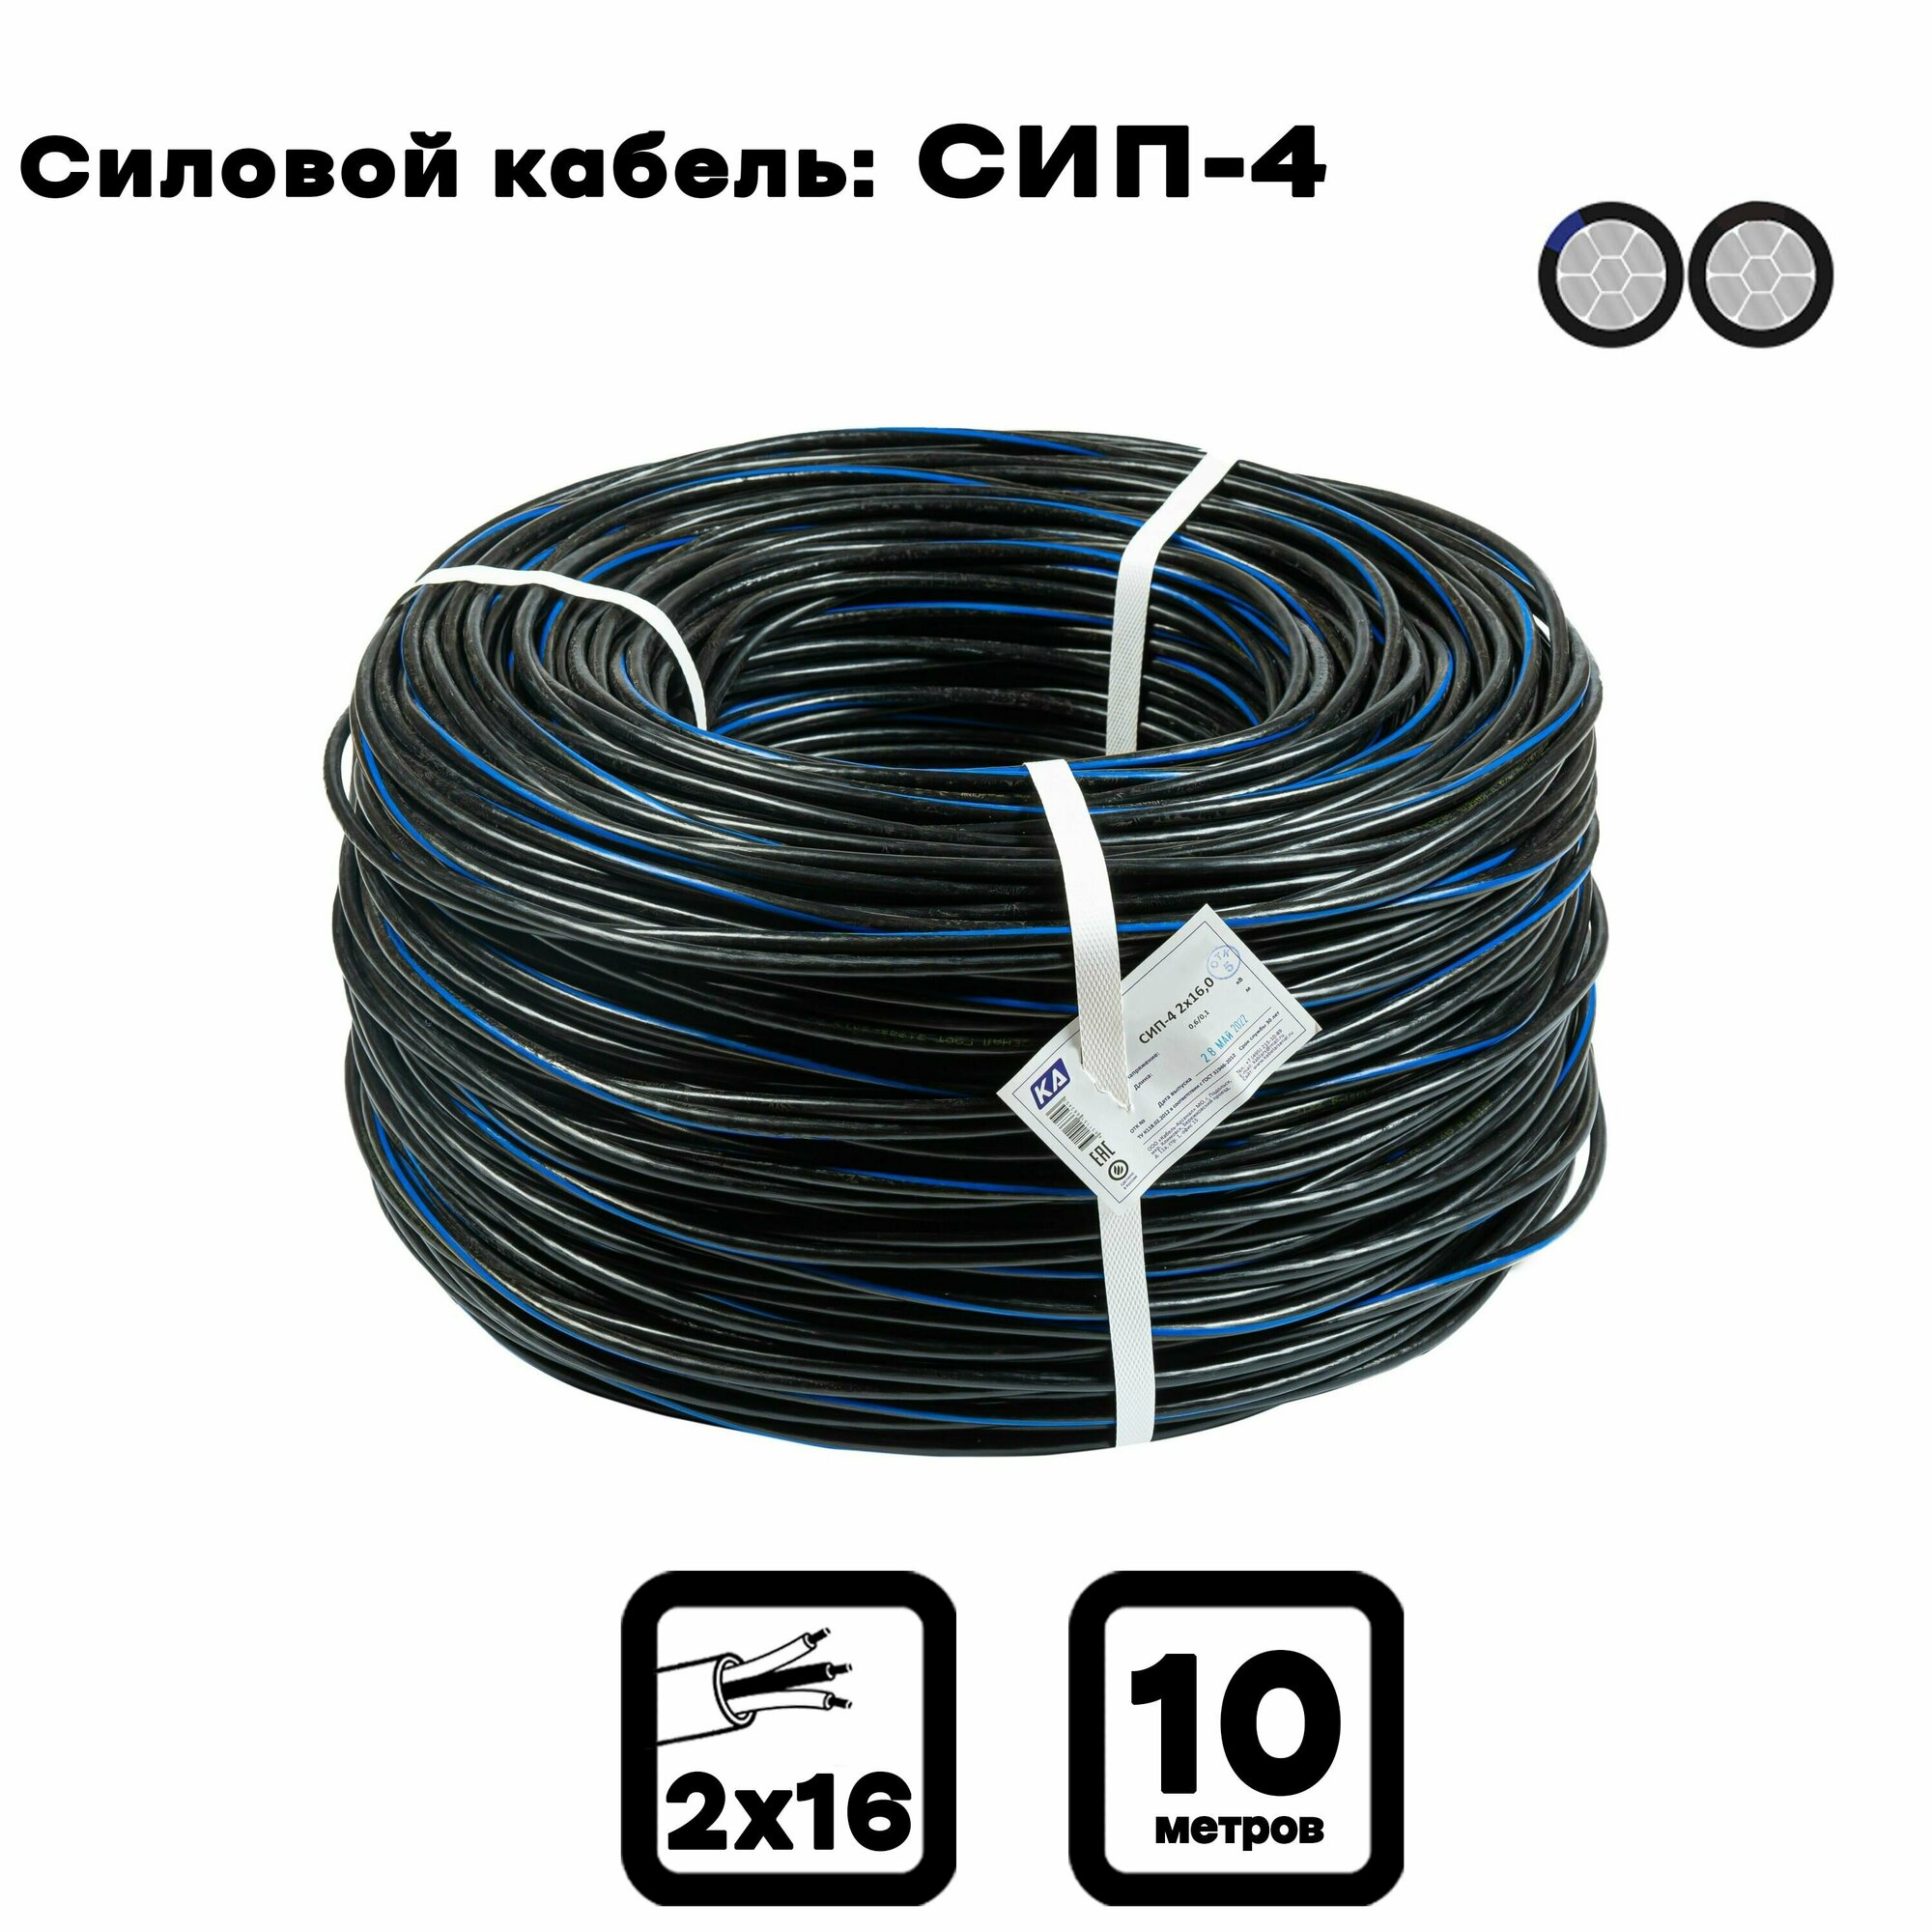 Силовой кабель СИП-4 2 x 16 мм, 10 м. (Московский кабельный завод)